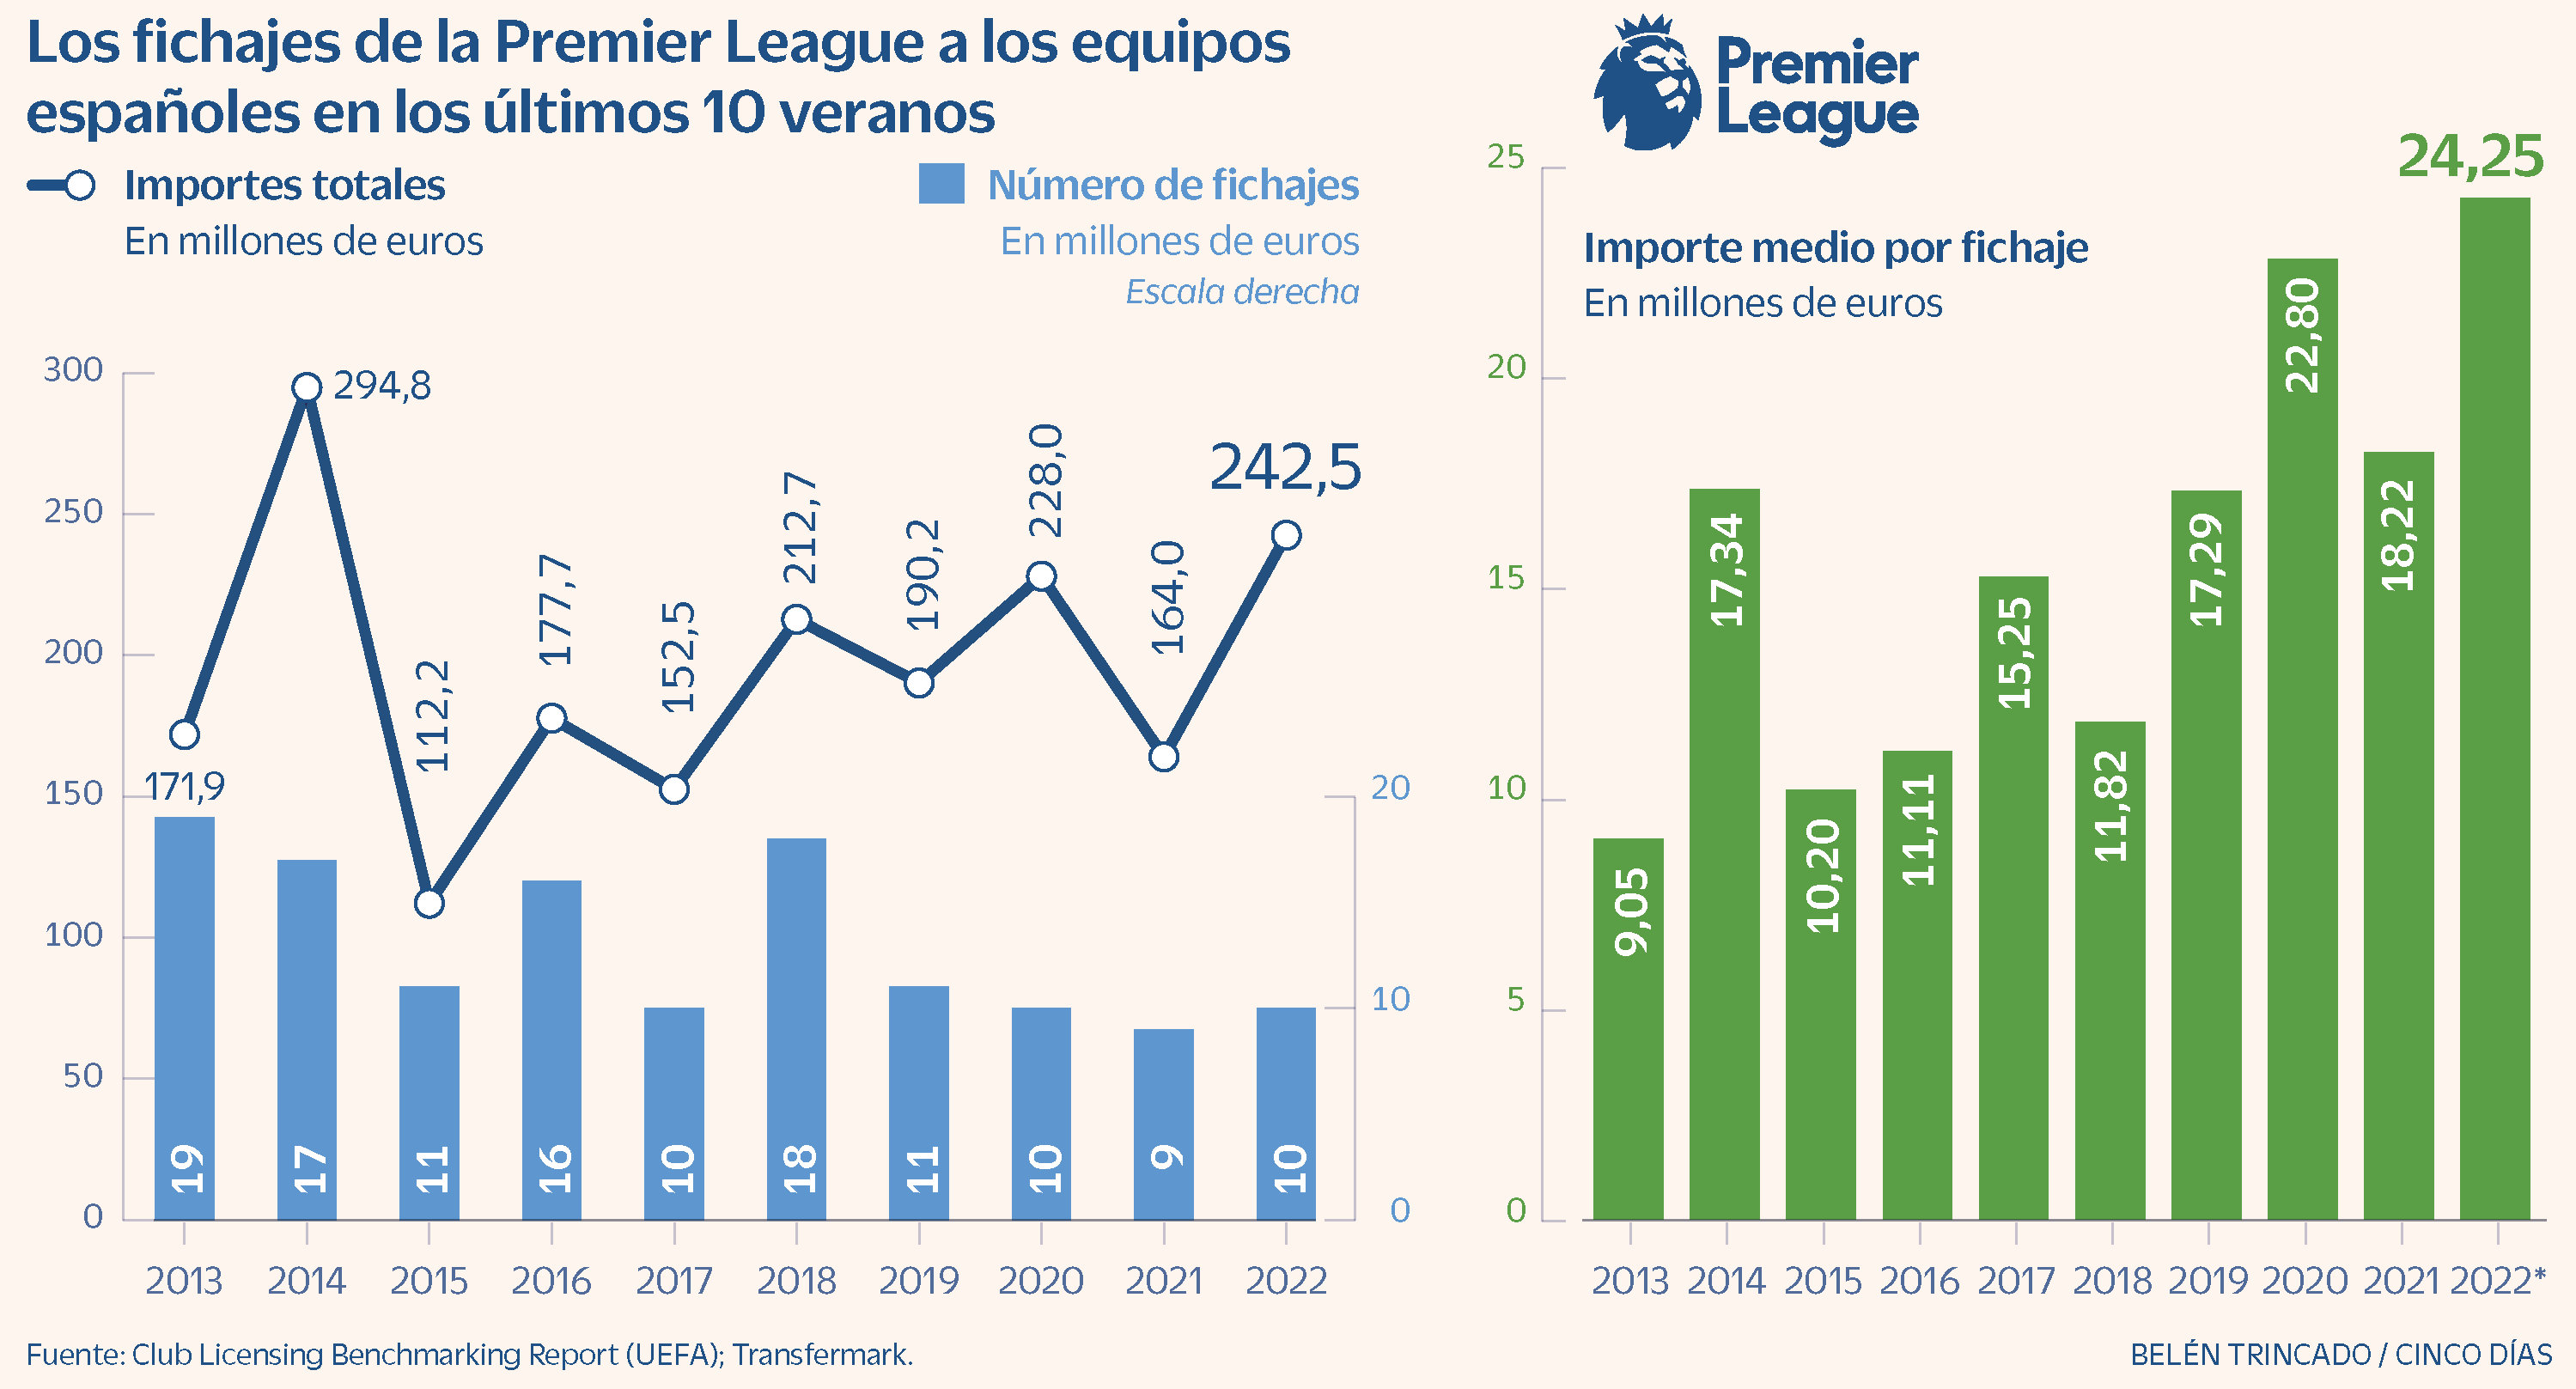 La League 200 millones en compras cada verano al fútbol español | Compañías | Días